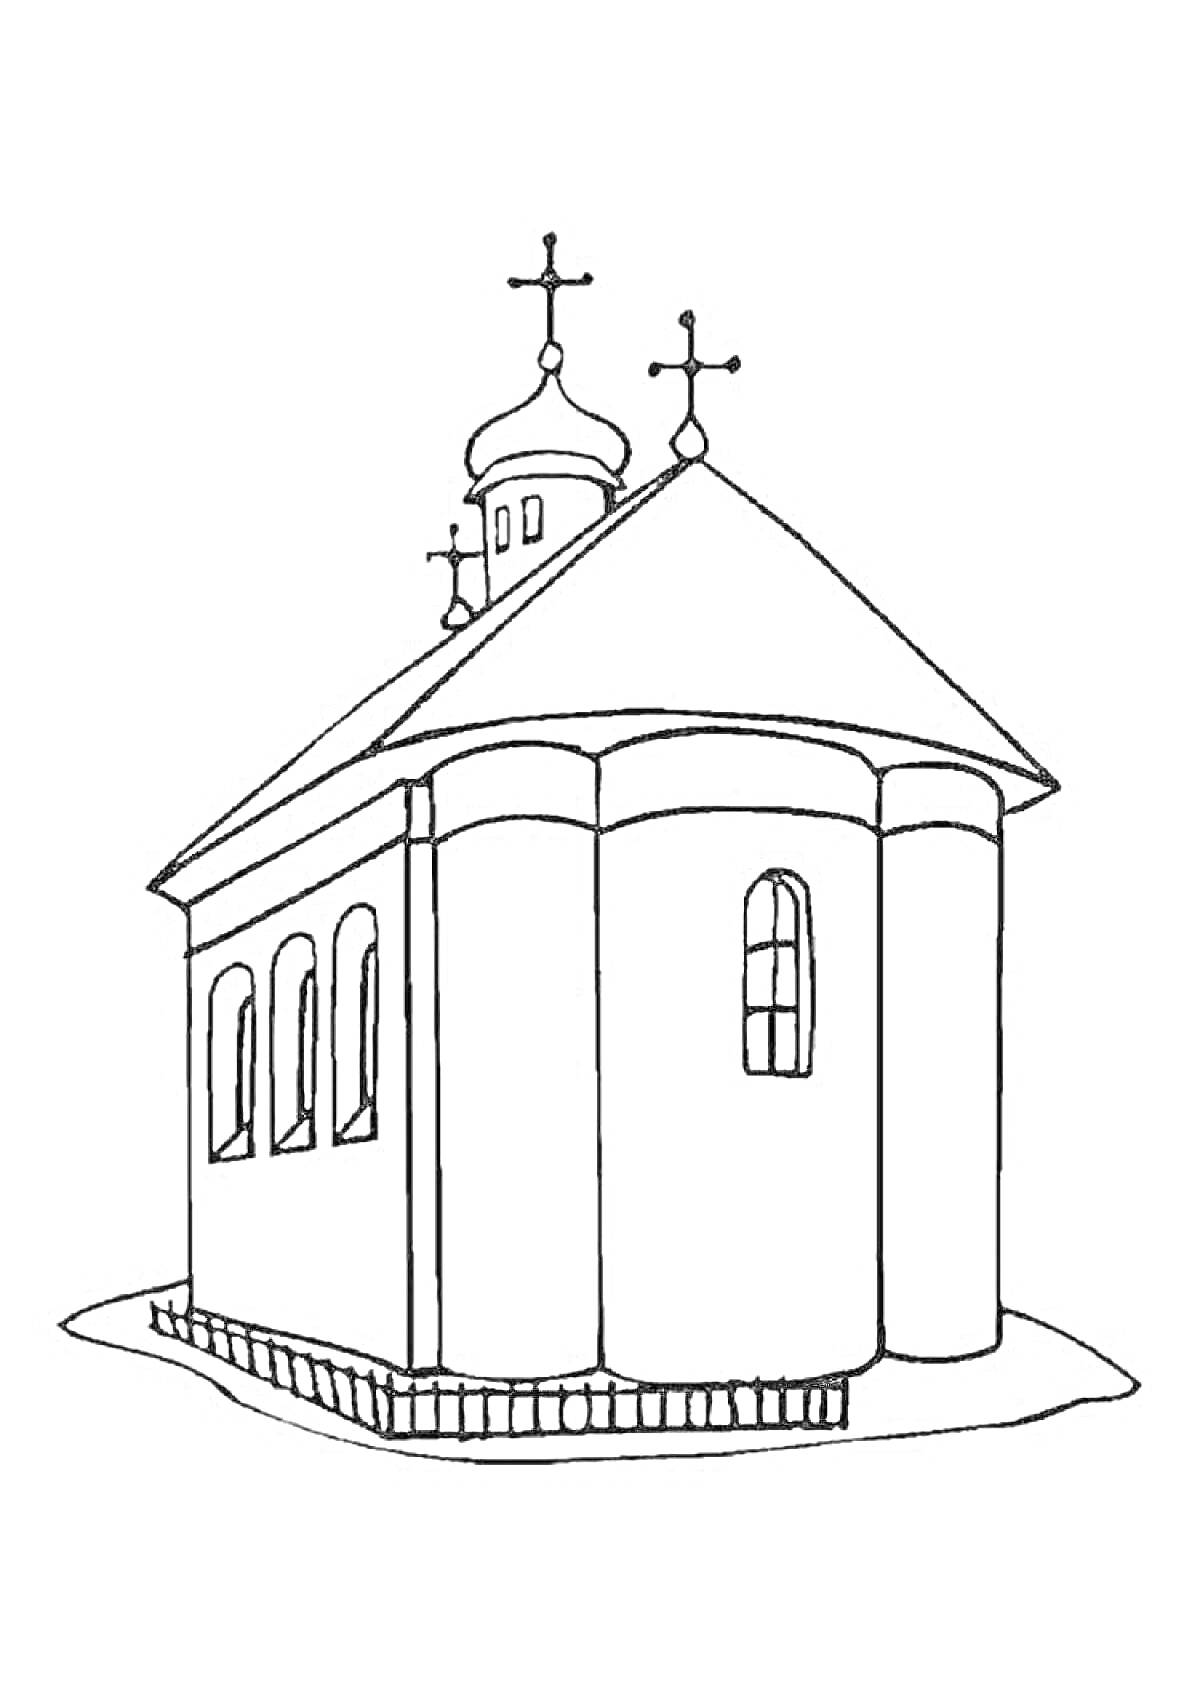 Раскраска храм с тремя куполами и крестами, двумя окнами с одной стороны и одним окном с другой стороны, забором вокруг